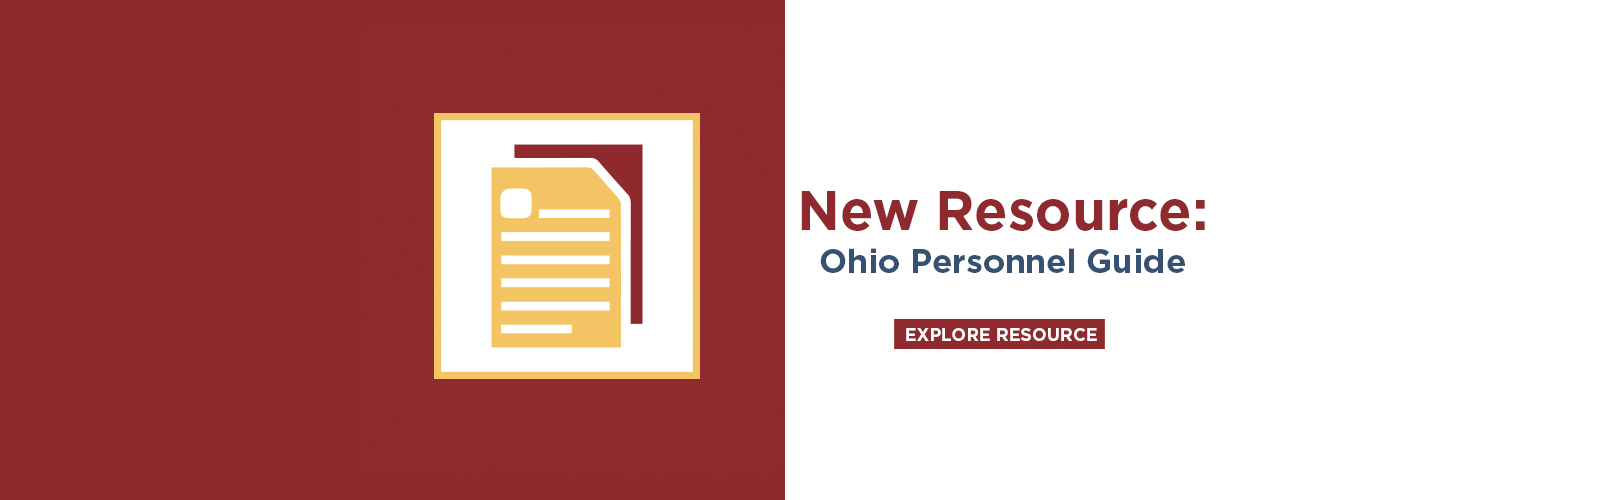 New Guide: Ohio Personnel Guide